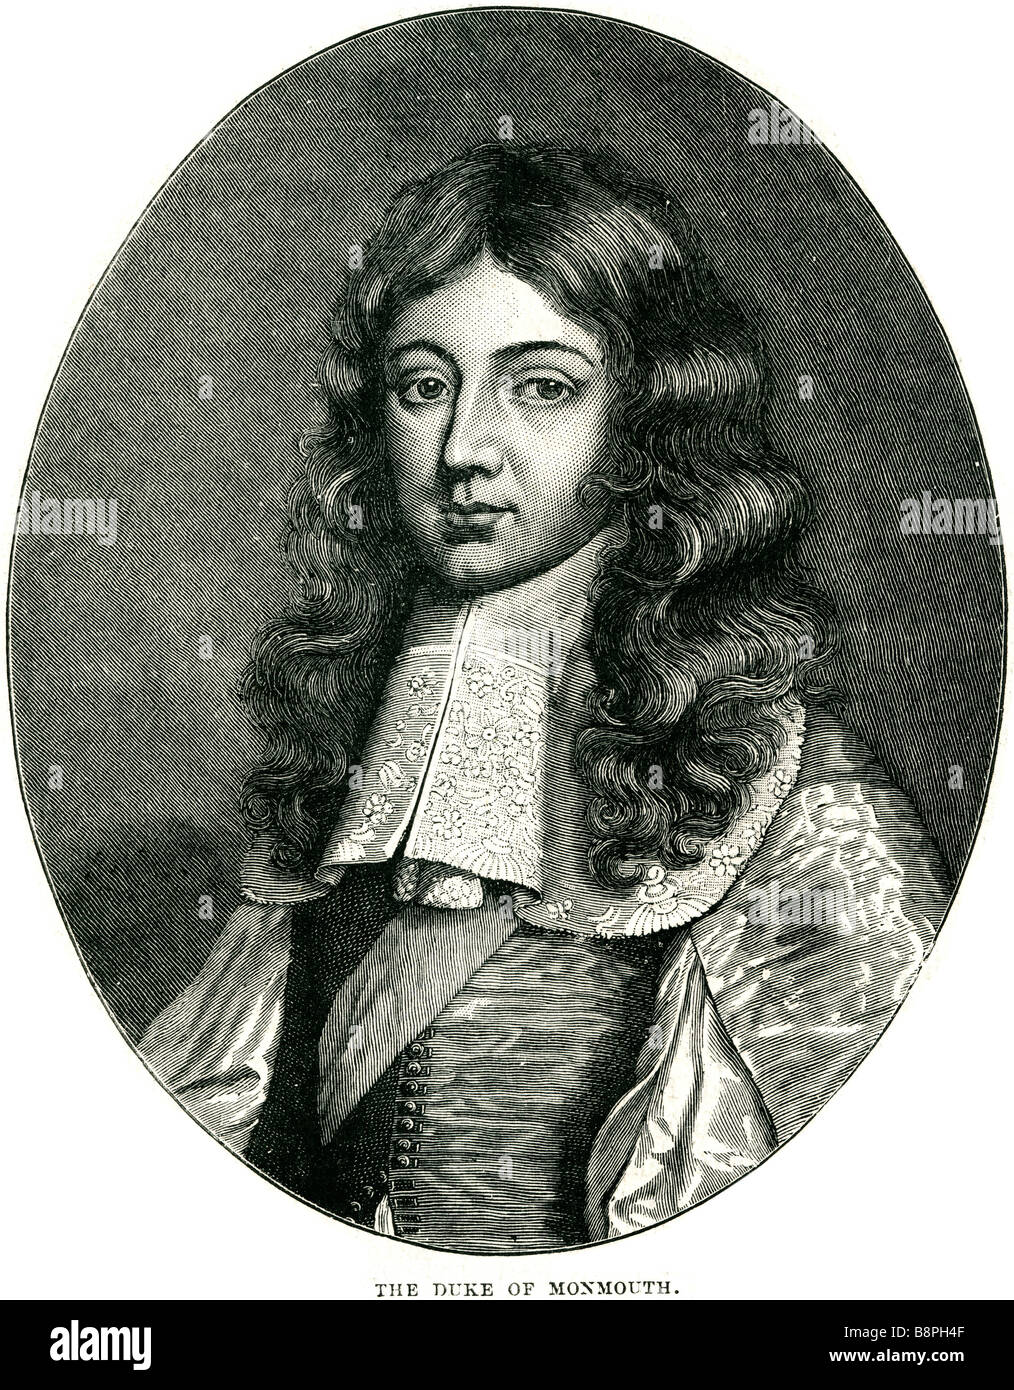 James Crofts, plus tard, James Scott, premier duc de Monmouth et 1er duc de Buccleuch PC (9 avril 1649 - 15 juillet 1685), était un Anglais Banque D'Images